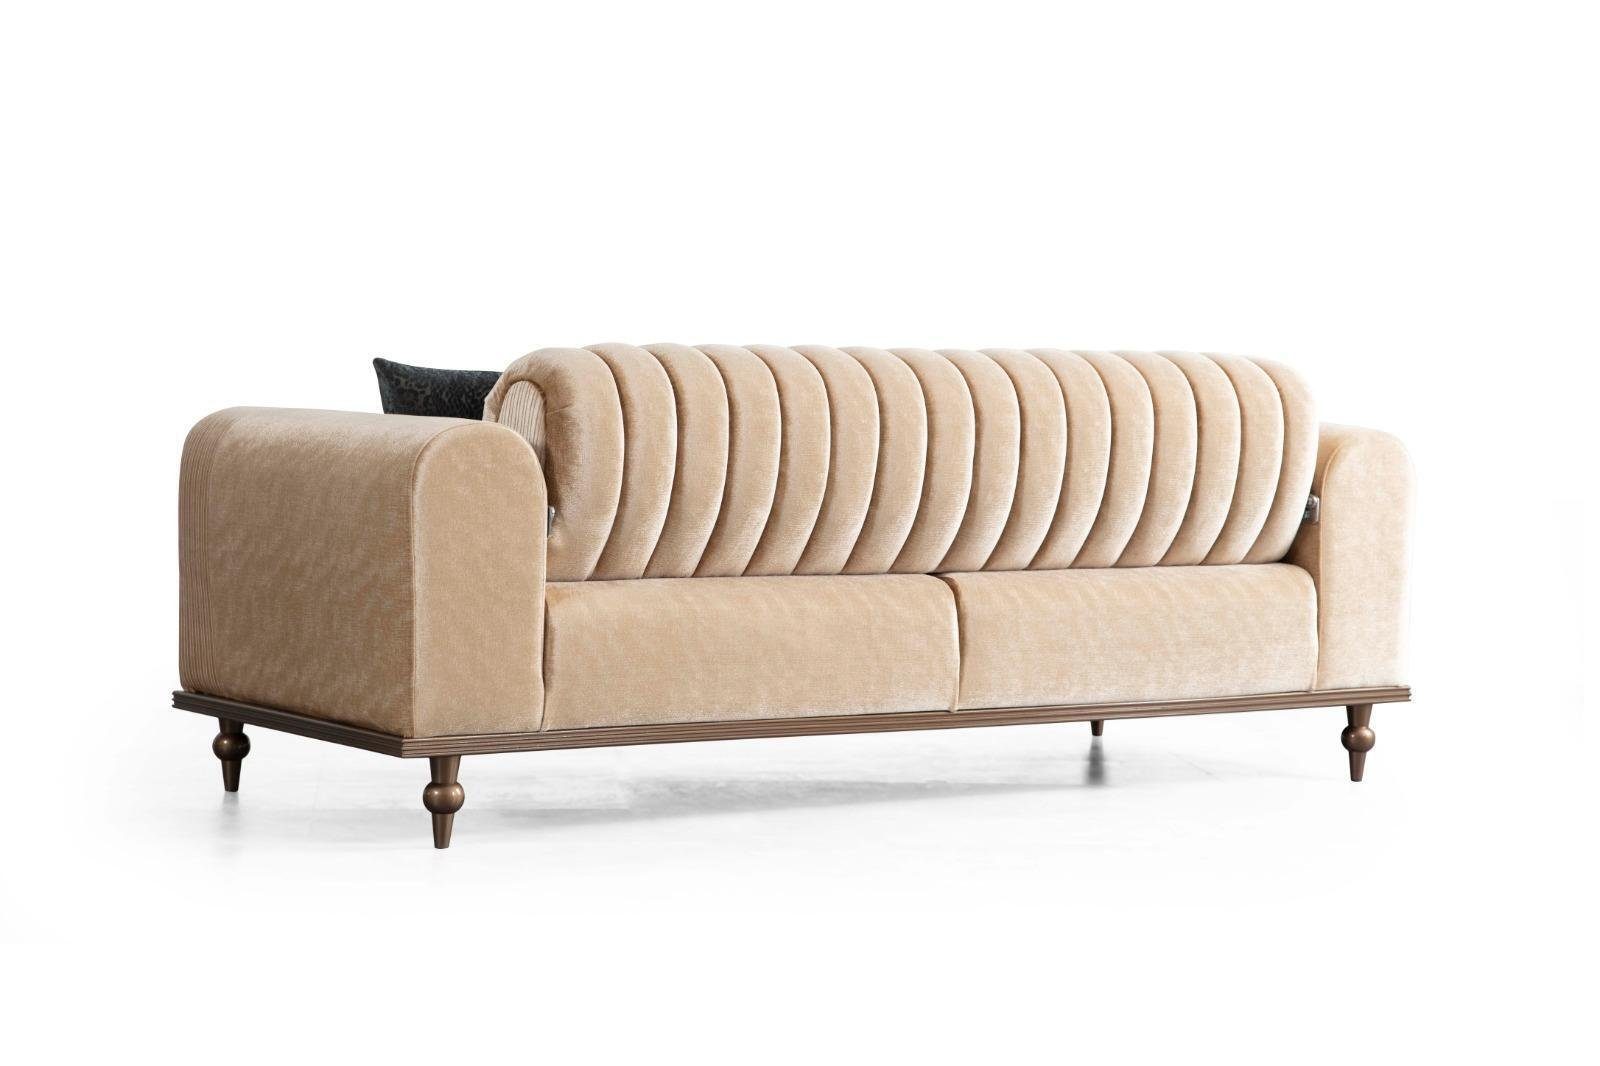 JVmoebel Sofa 3+1 Teile Set Couchtisch 2 Beige, Modern Wohnzimmer Design Couchgarnitur